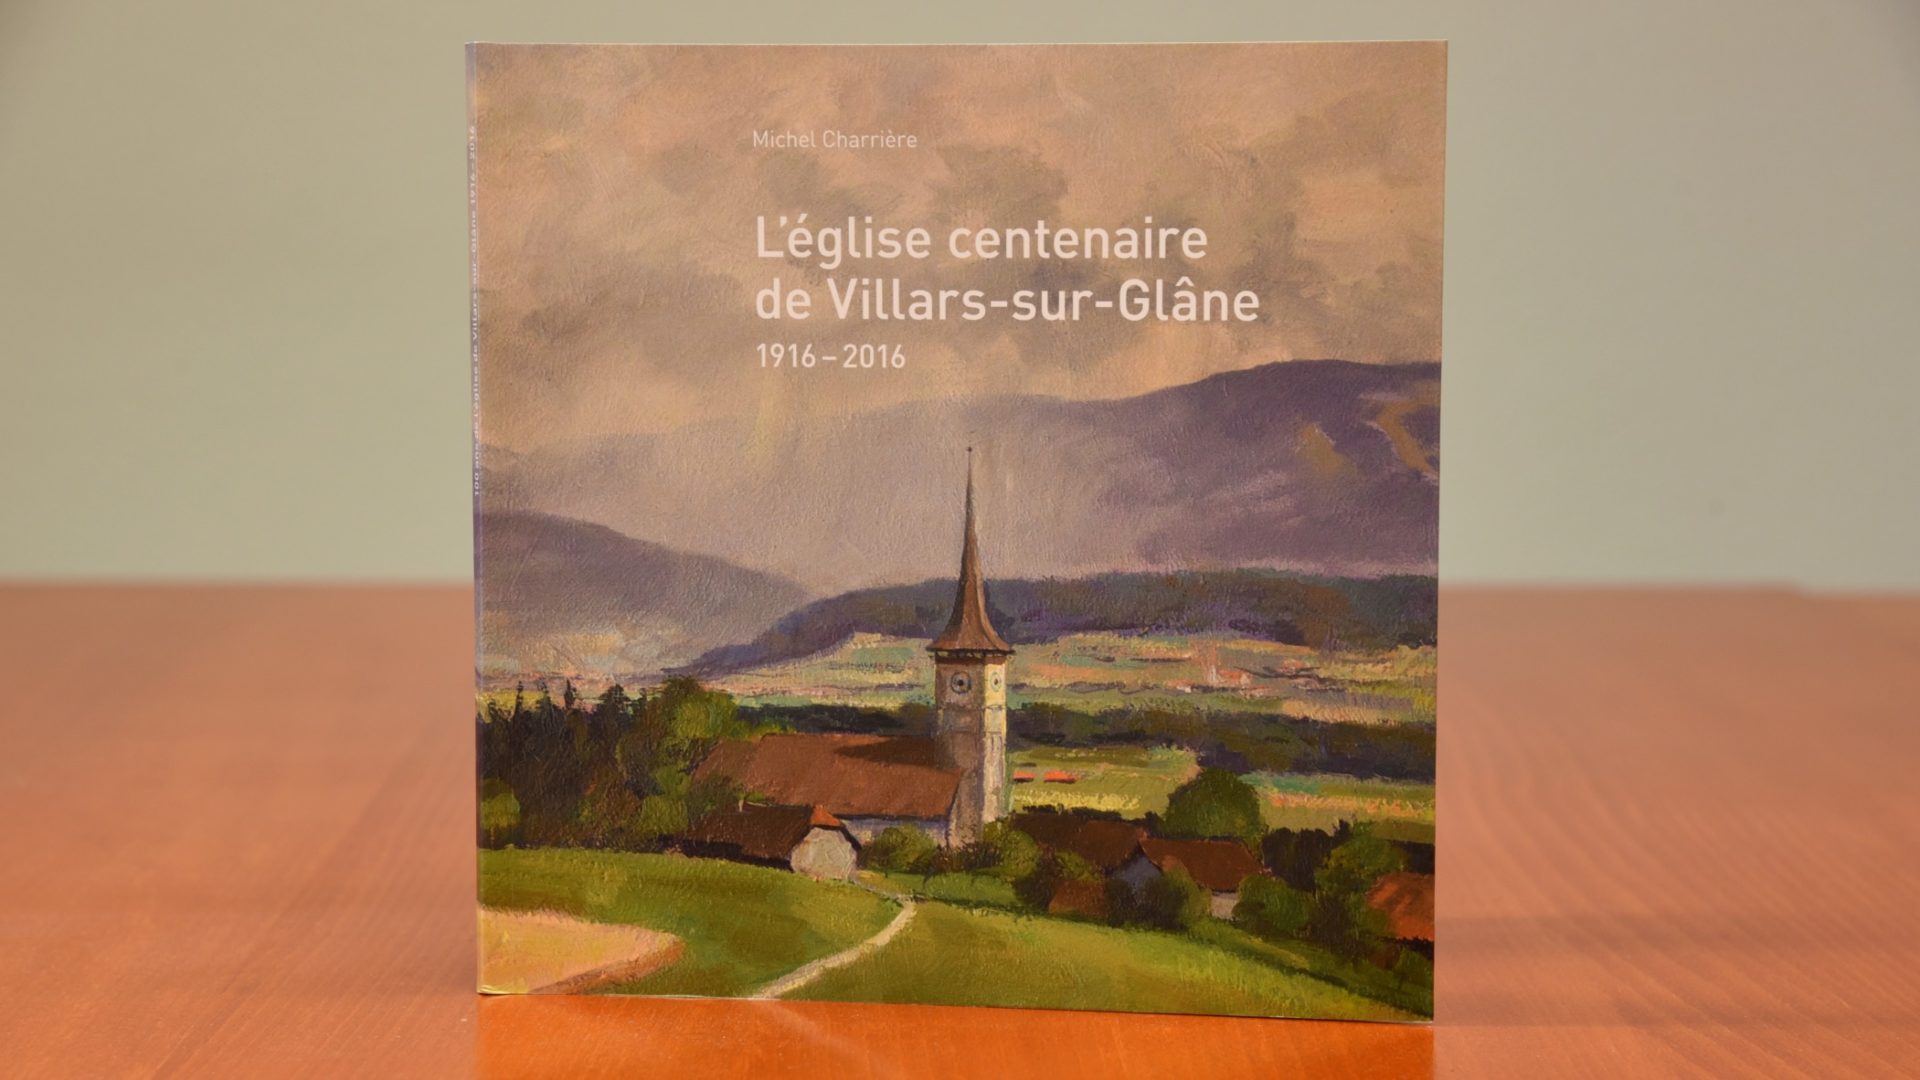 La plaquette retrace l'histoire de la paroisse de Villars-sur-Glâne (Photo:Raphaël Zbinden)